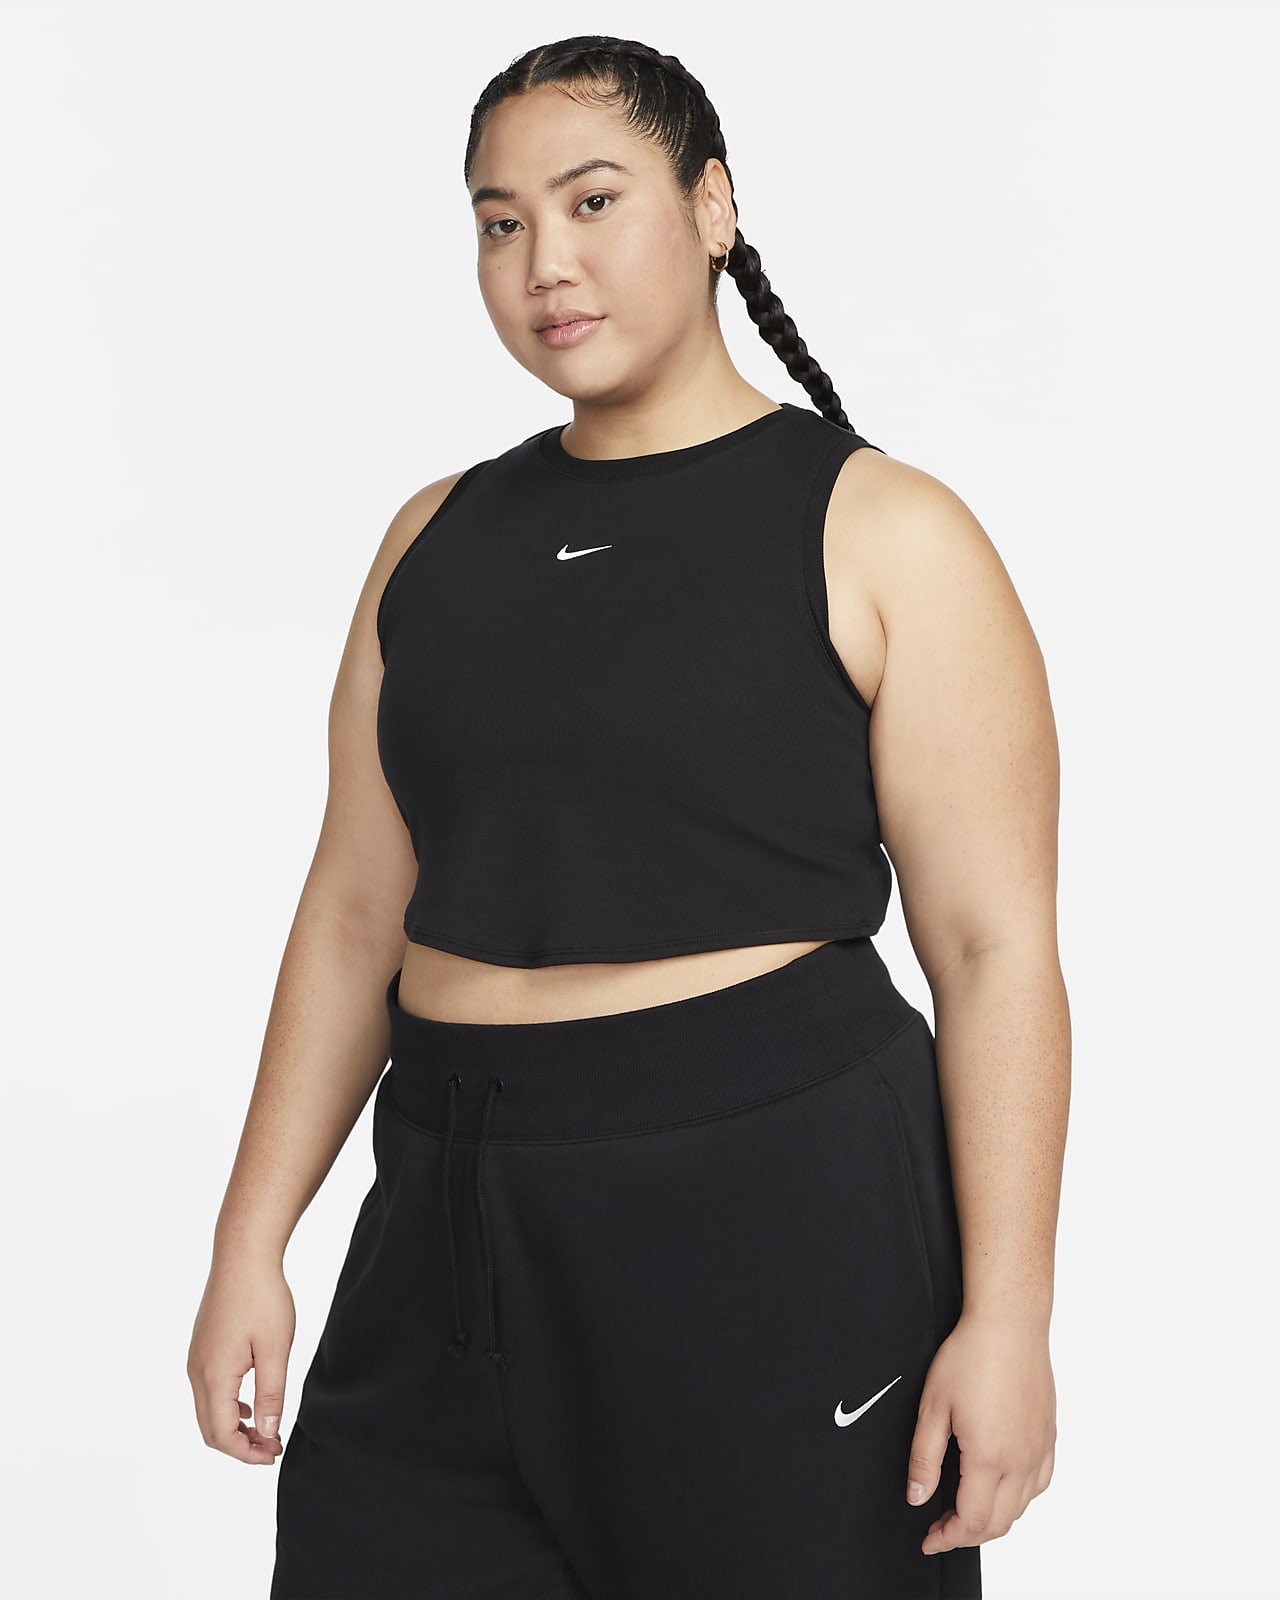 Γυναικείο tank top crop σε εφαρμοστή γραμμή με λεπτή ριμπ ύφανση Nike Sportswear Chill Knit (μεγάλα μεγέθη)